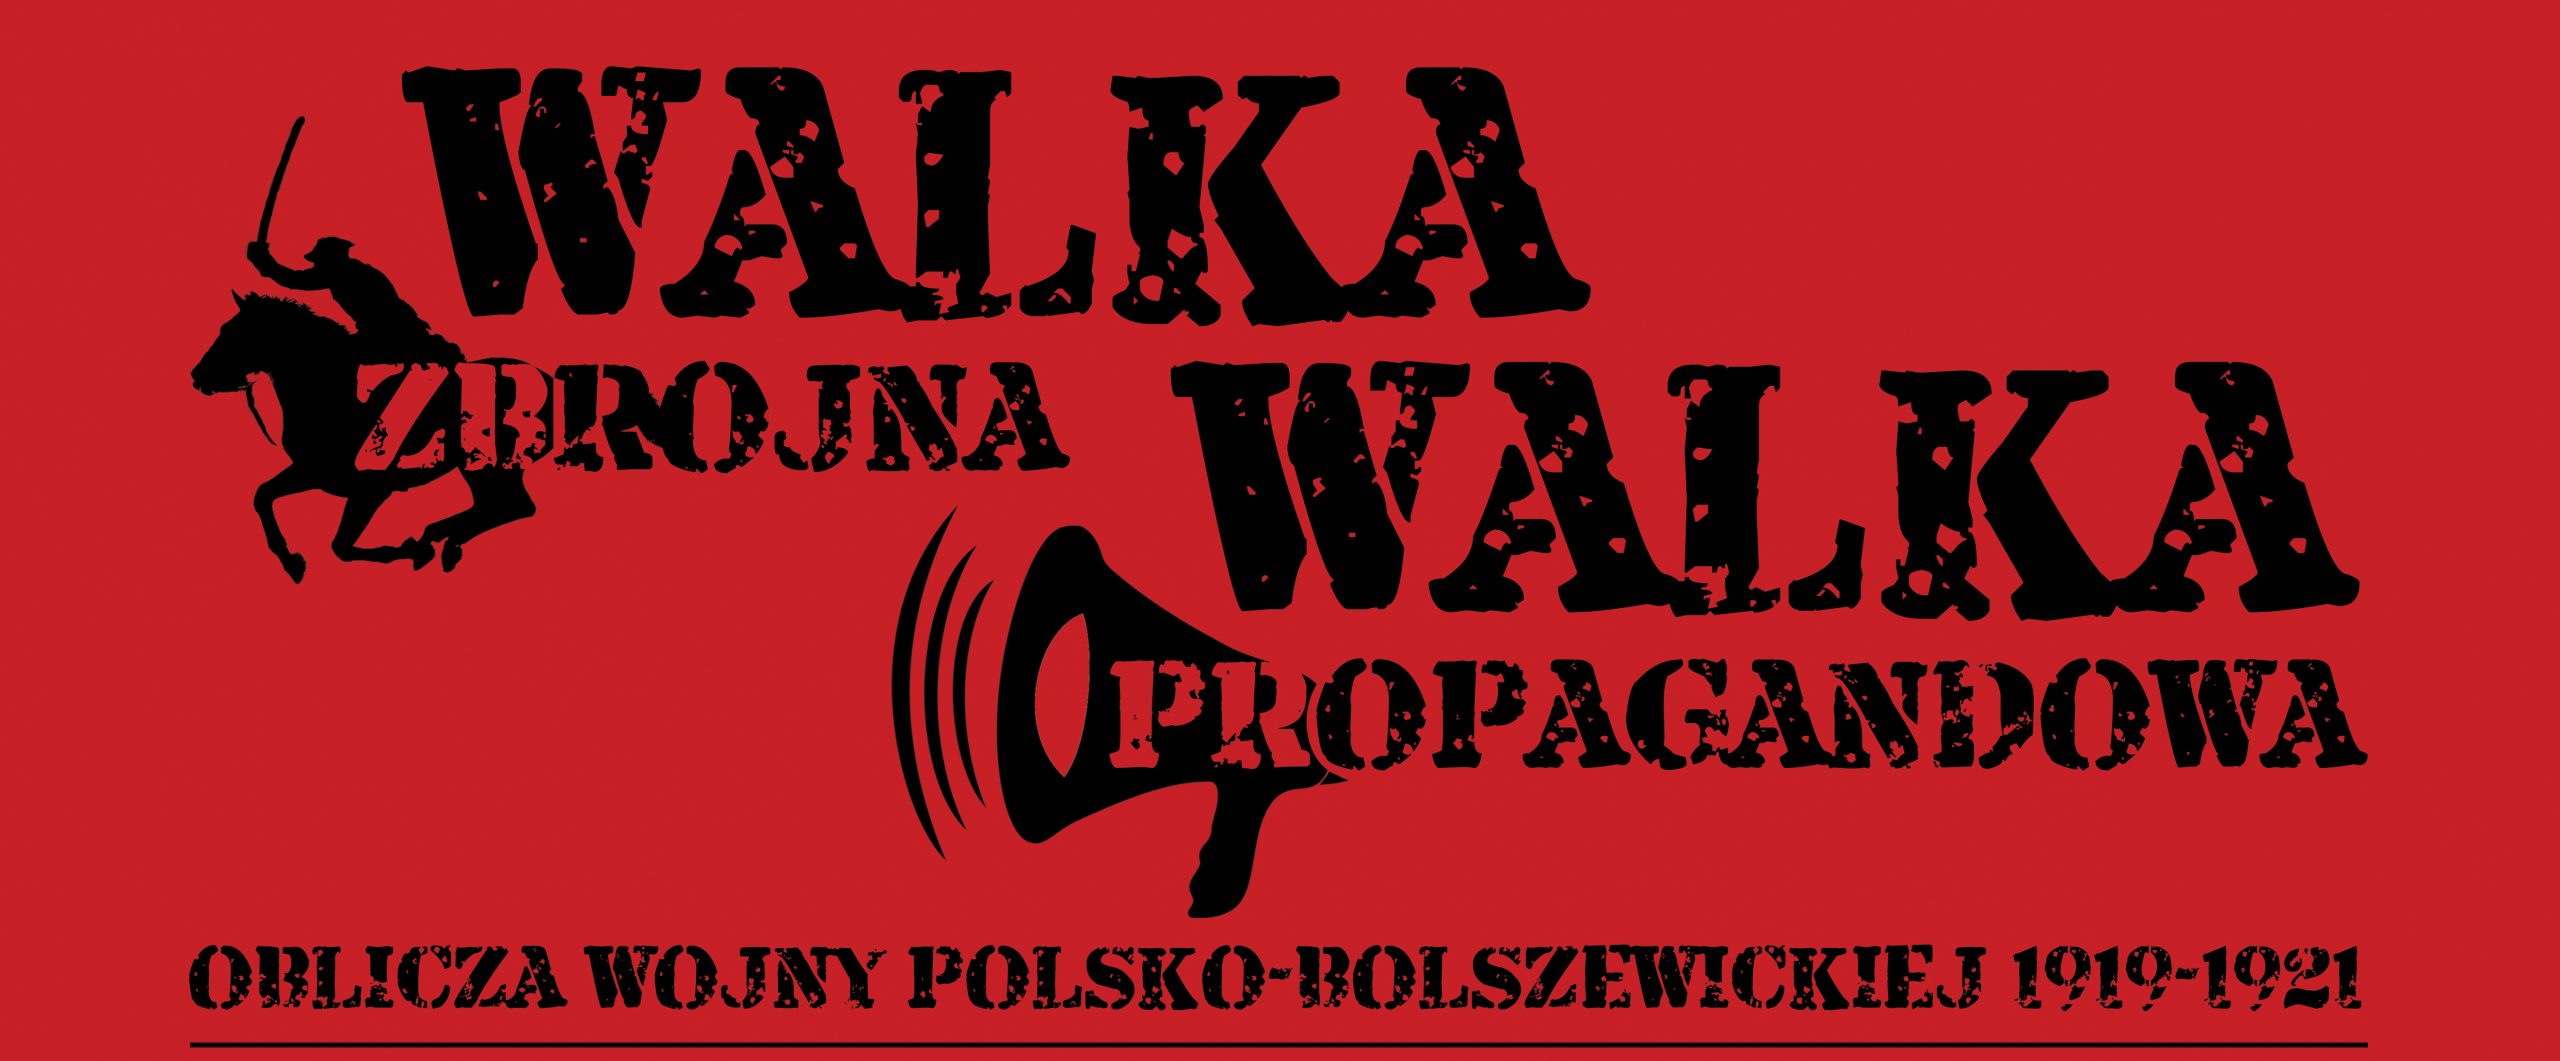 “Walka zbrojna-Walka propagandowa. Oblicza wojny polsko-bolszewickiej 1919-1921” – projekt realizowany przez Archiwum Państwowe w Lublinie w 100. rocznicę Bitwy Warszawskiej